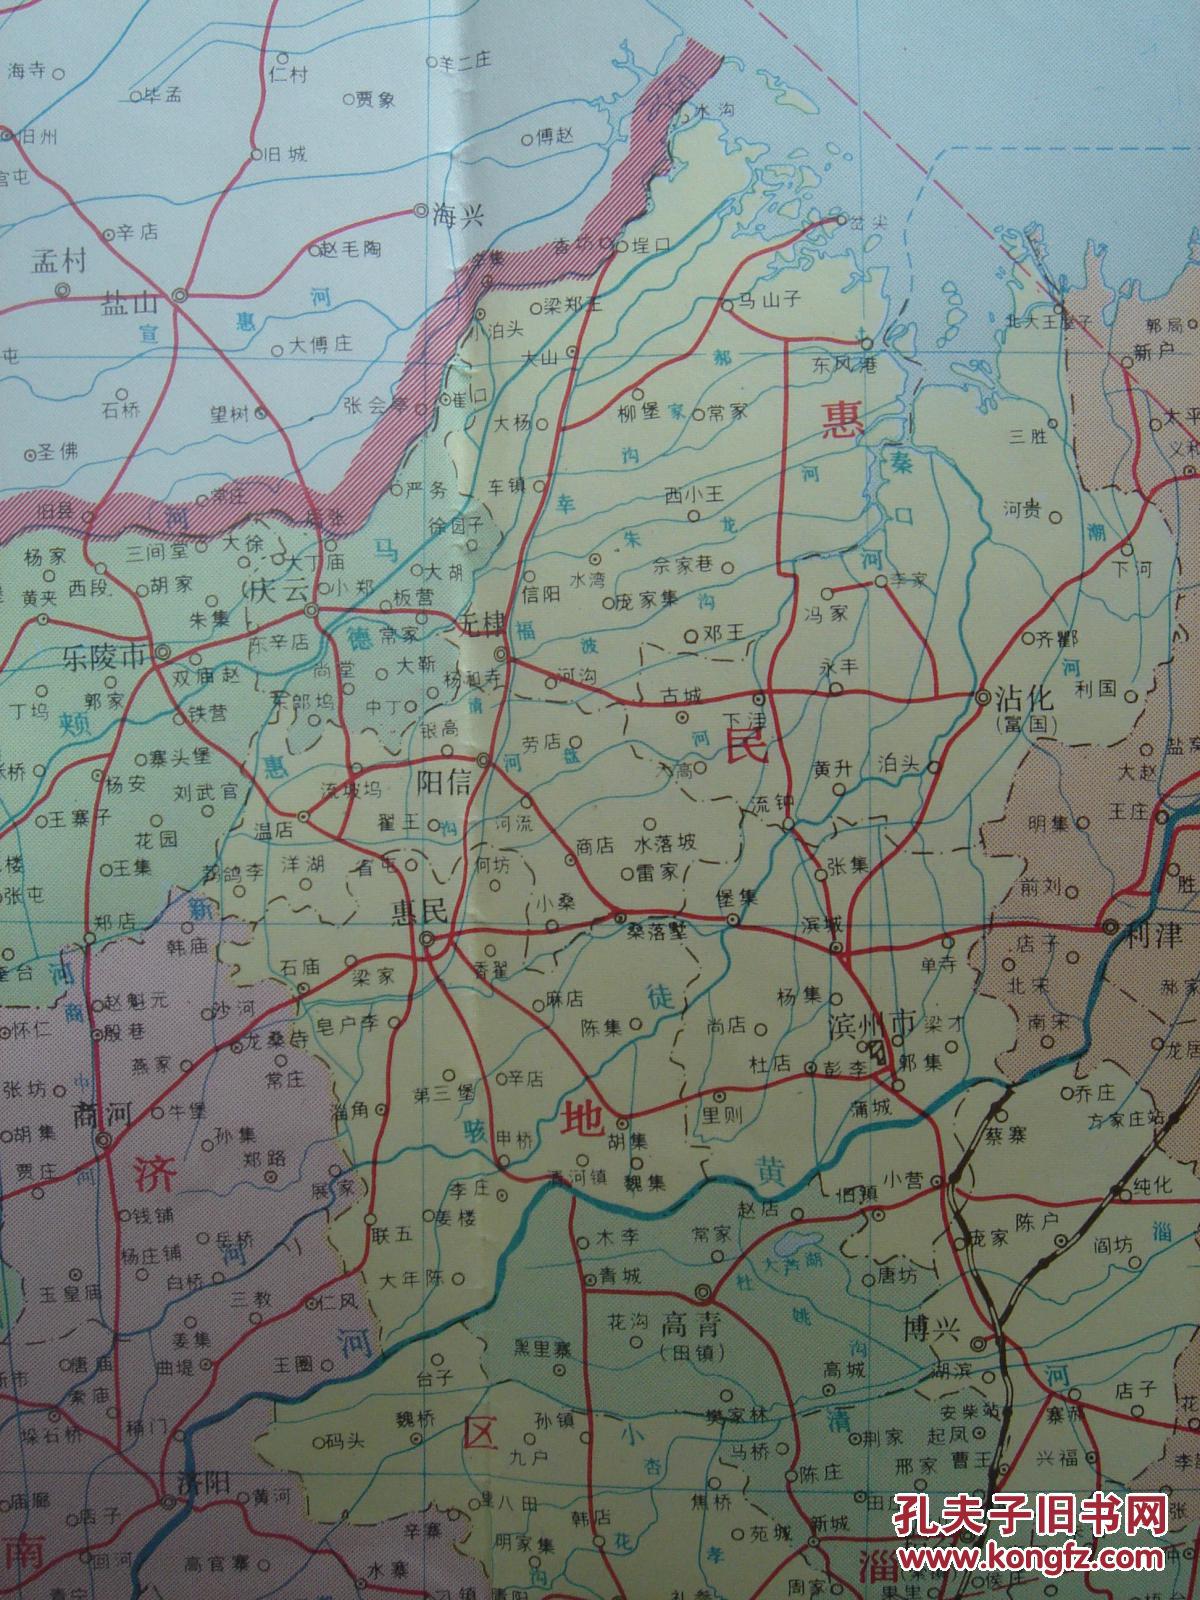 【旧地图】山东省地图 2开 1990年7月1版1印 还标有惠民地区!图片